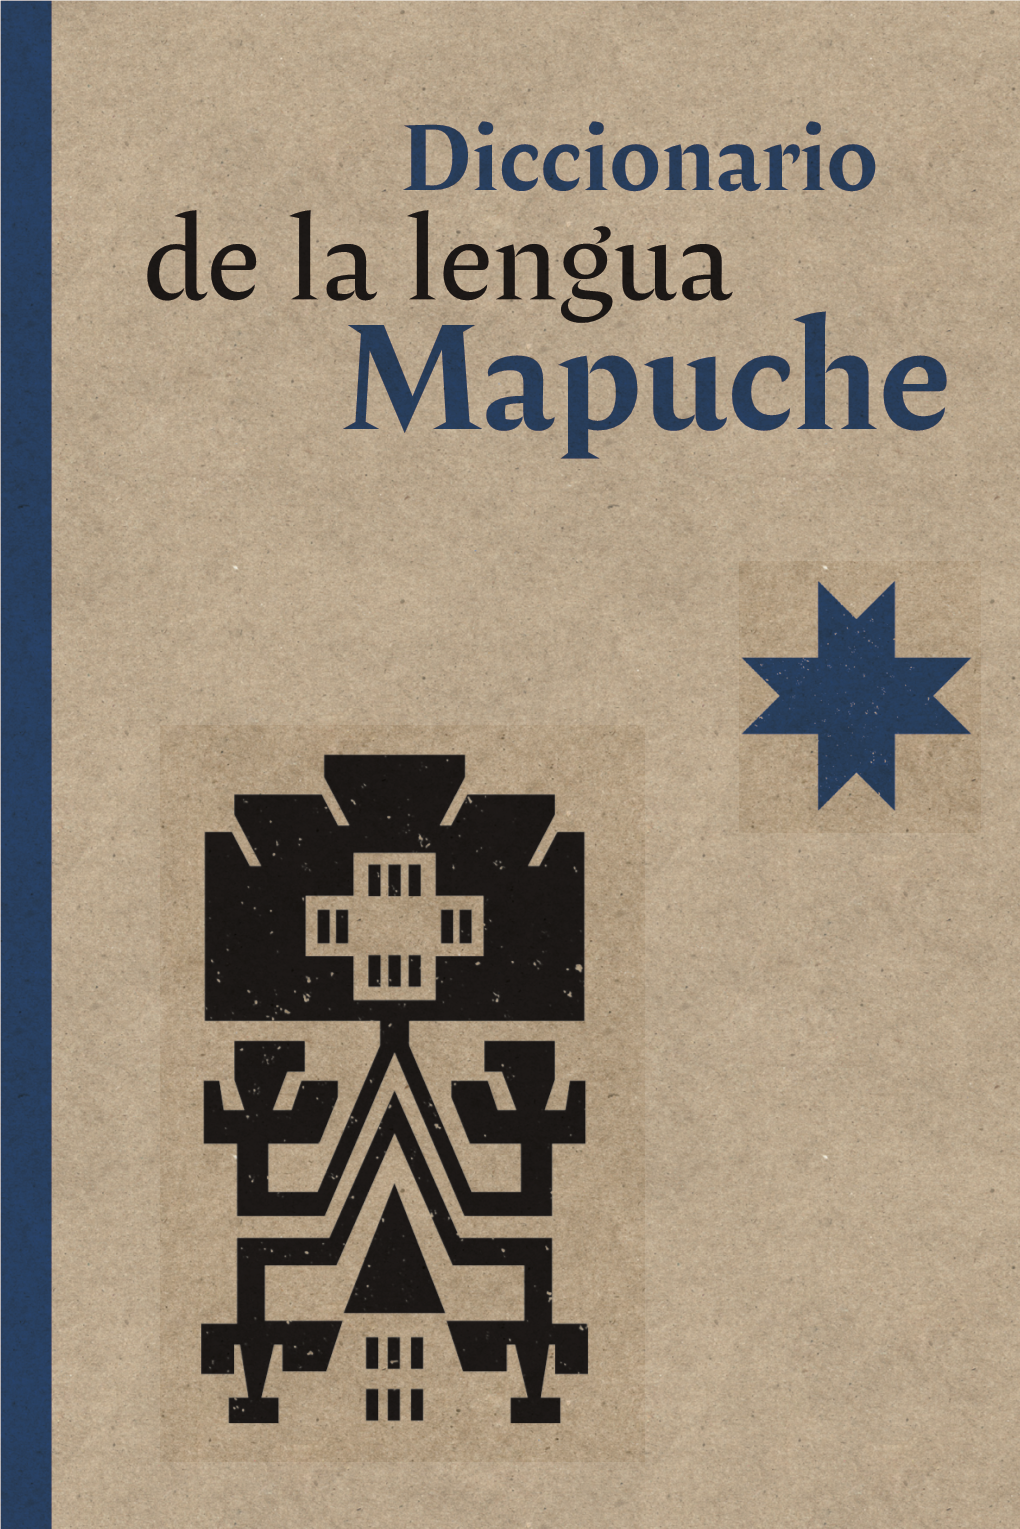 Diccionario De La Lengua Mapuche UNIDAD DE COORDINACIÓN DE ASUNTOS INDÍGENAS DEL MINISTERIO DE DESARROLLO SOCIAL Y FAMILIA